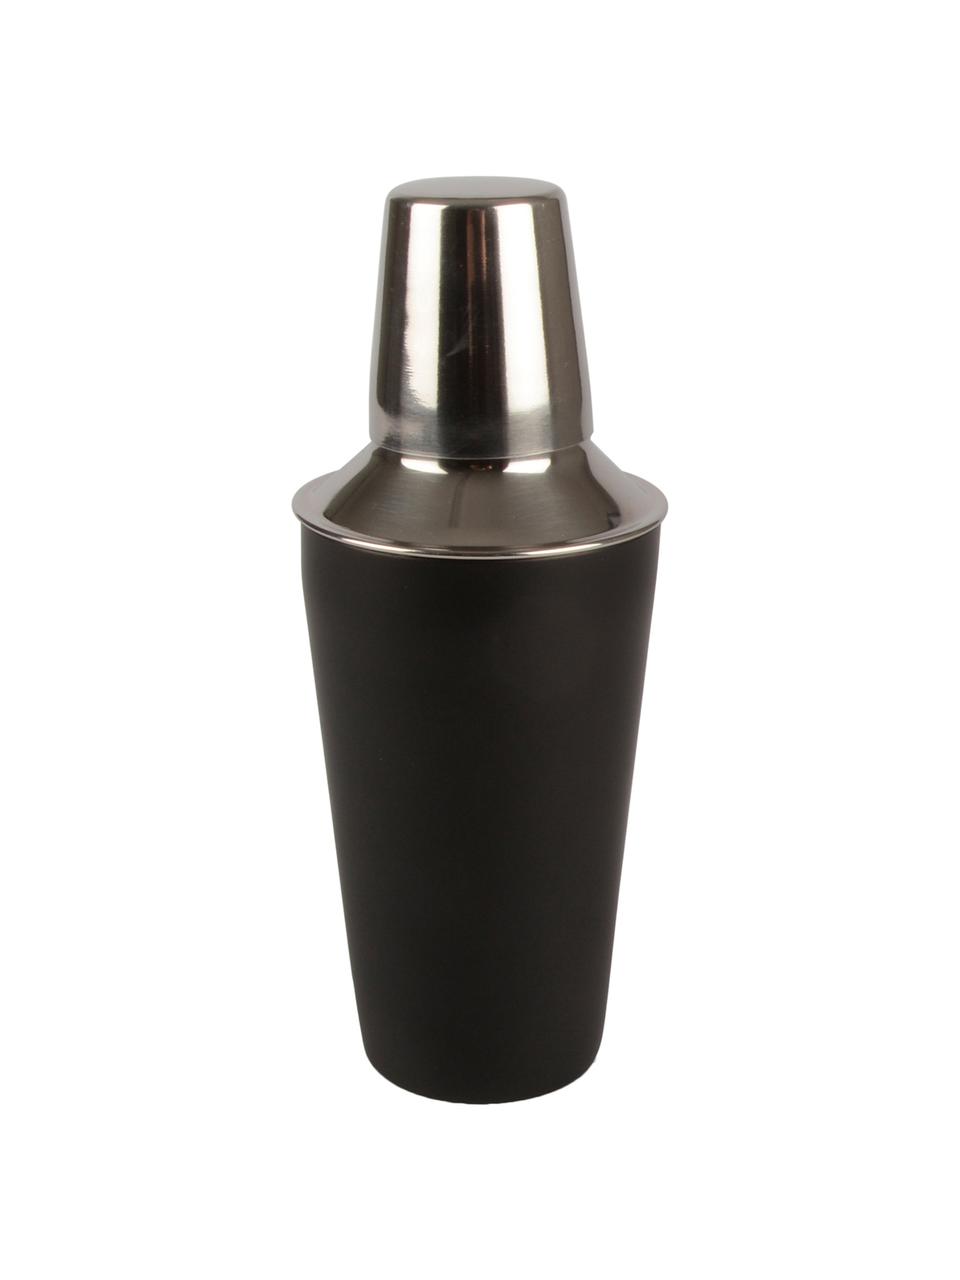 Cocktail-Shaker Stambi in Schwarz/Silber, Rostfreier Stahl, beschichtet, Schwarz, Stahl, Ø 8 x H 22 cm